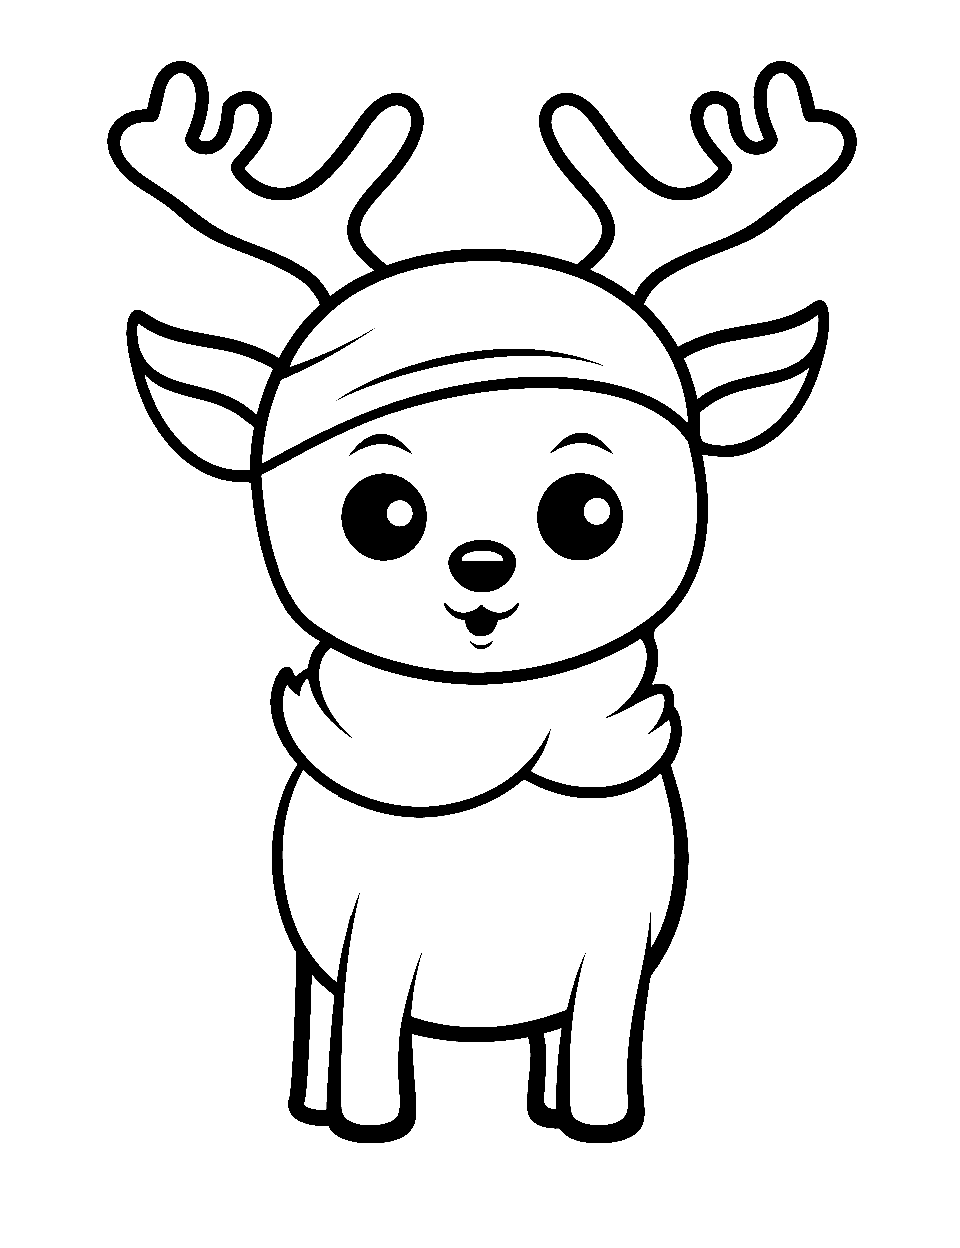 Kawaii Reindeer Santa Coloring Page - Cute, stylized versions of a Kawaii reindeer with big, expressive eyes.